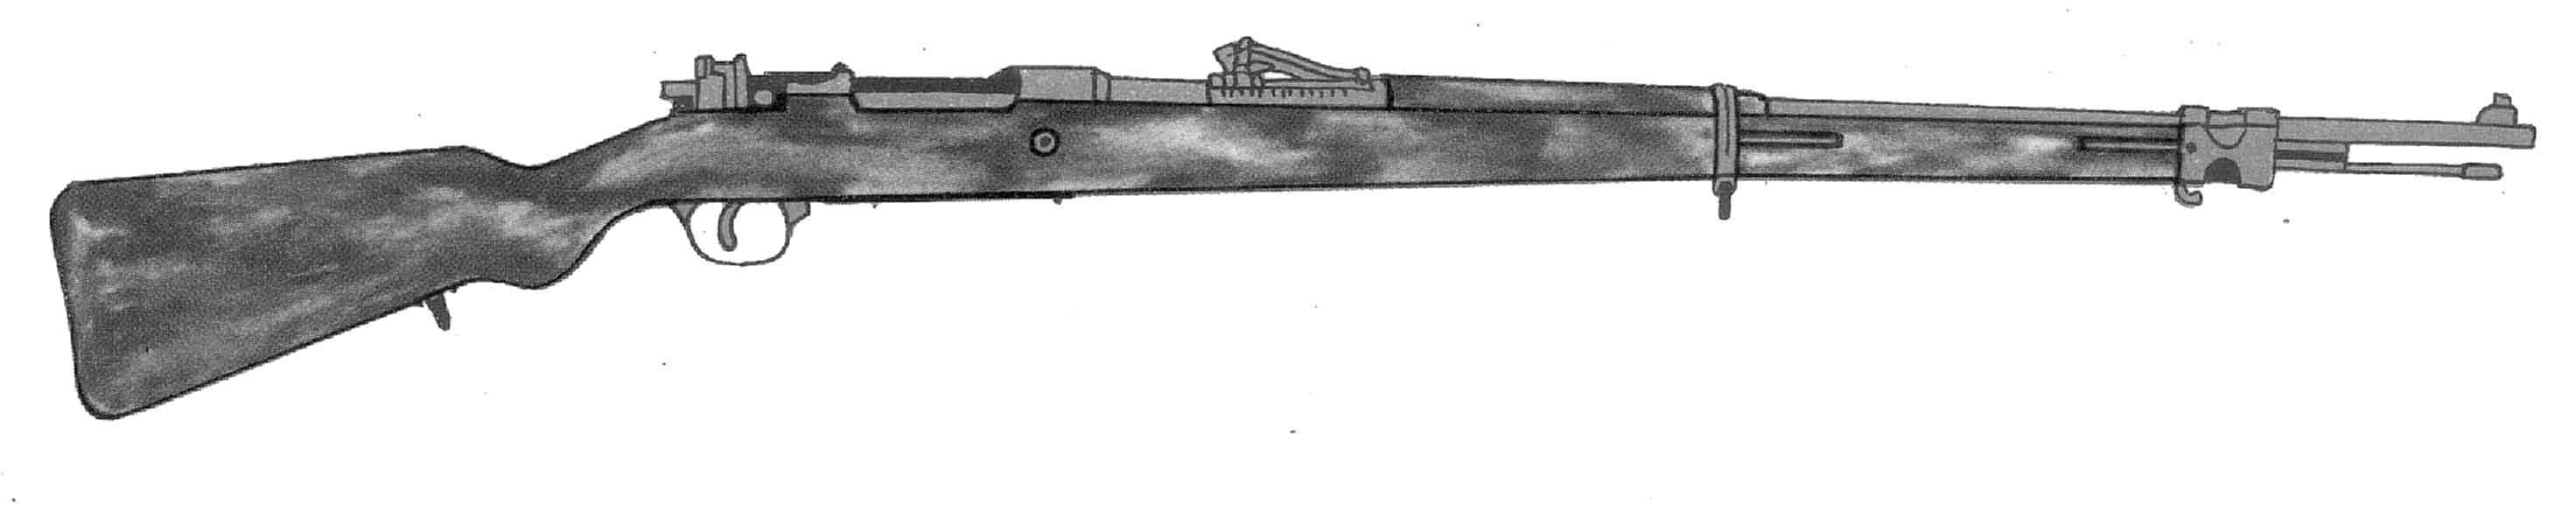 karabin Mauser wz.98